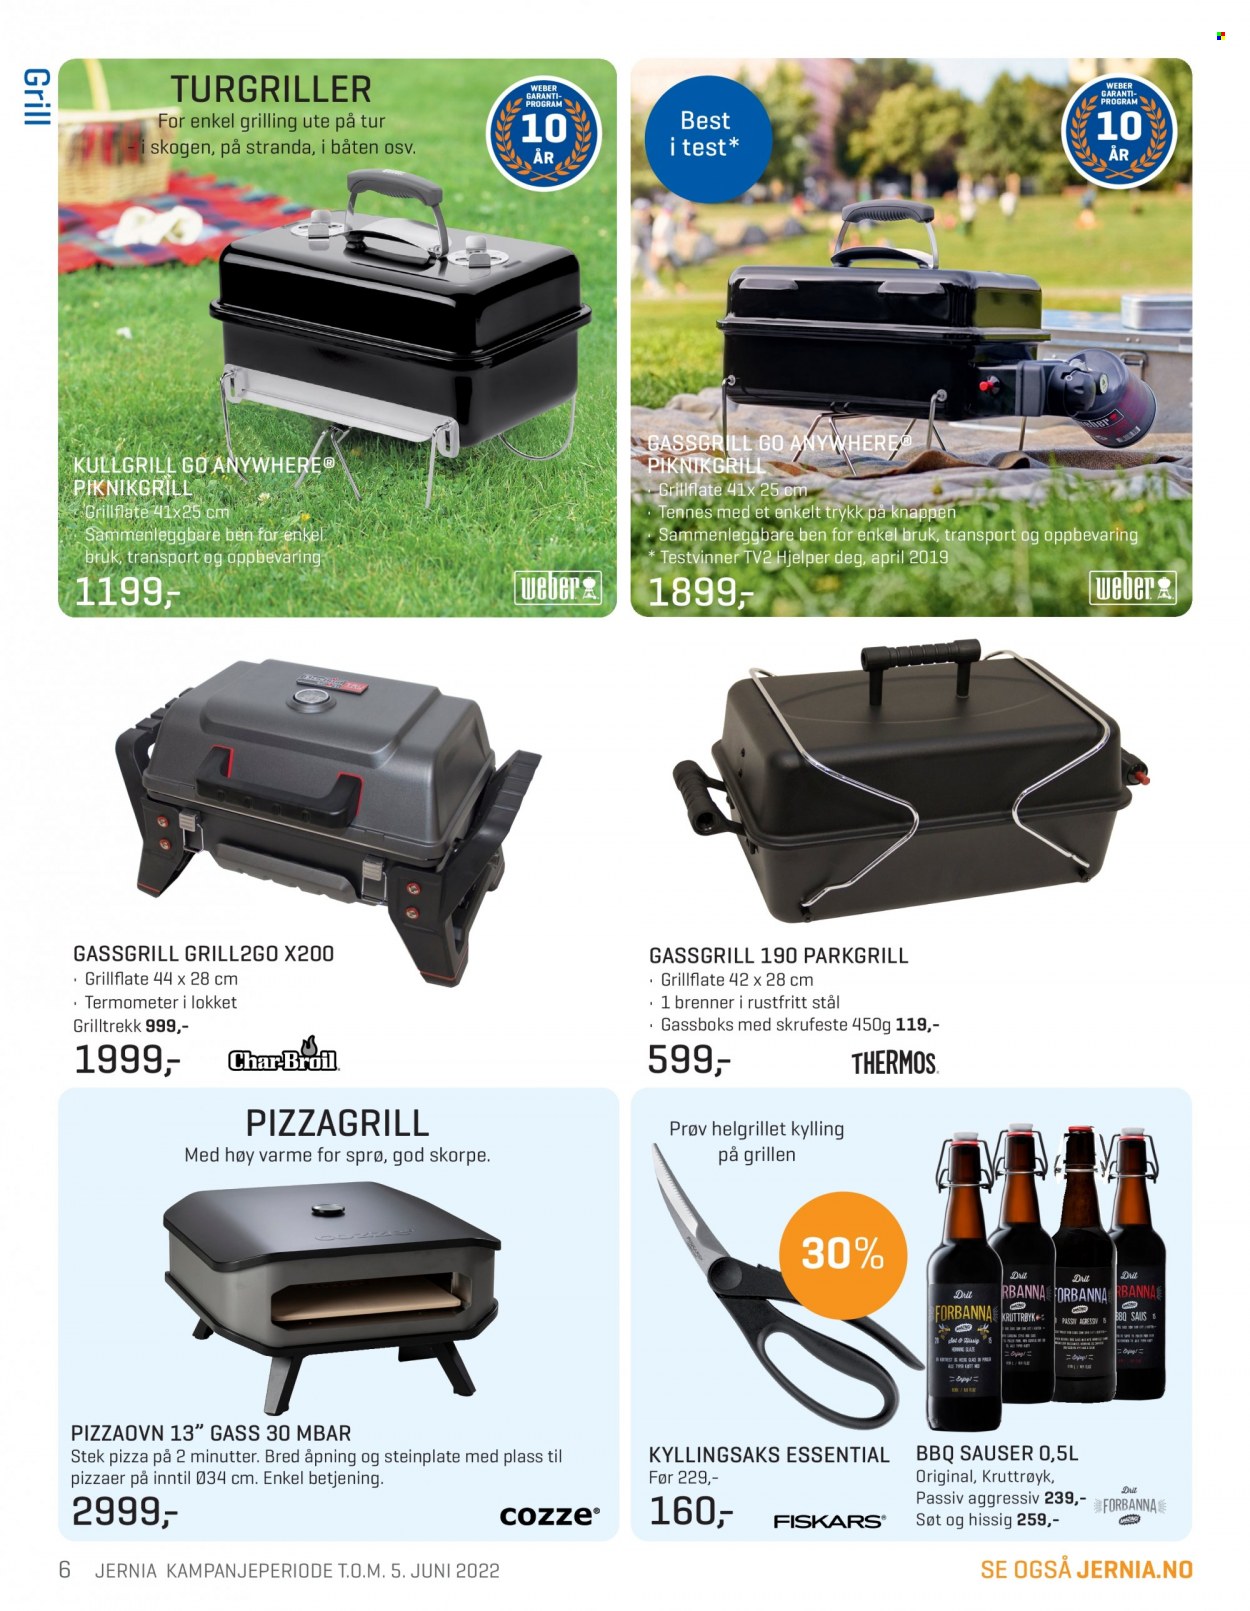 Kundeavis Jernia - 09.05.2022 - 05.06.2022 - Produkter fra tilbudsaviser - grill, pizza, kylling, Weber. Side 6.